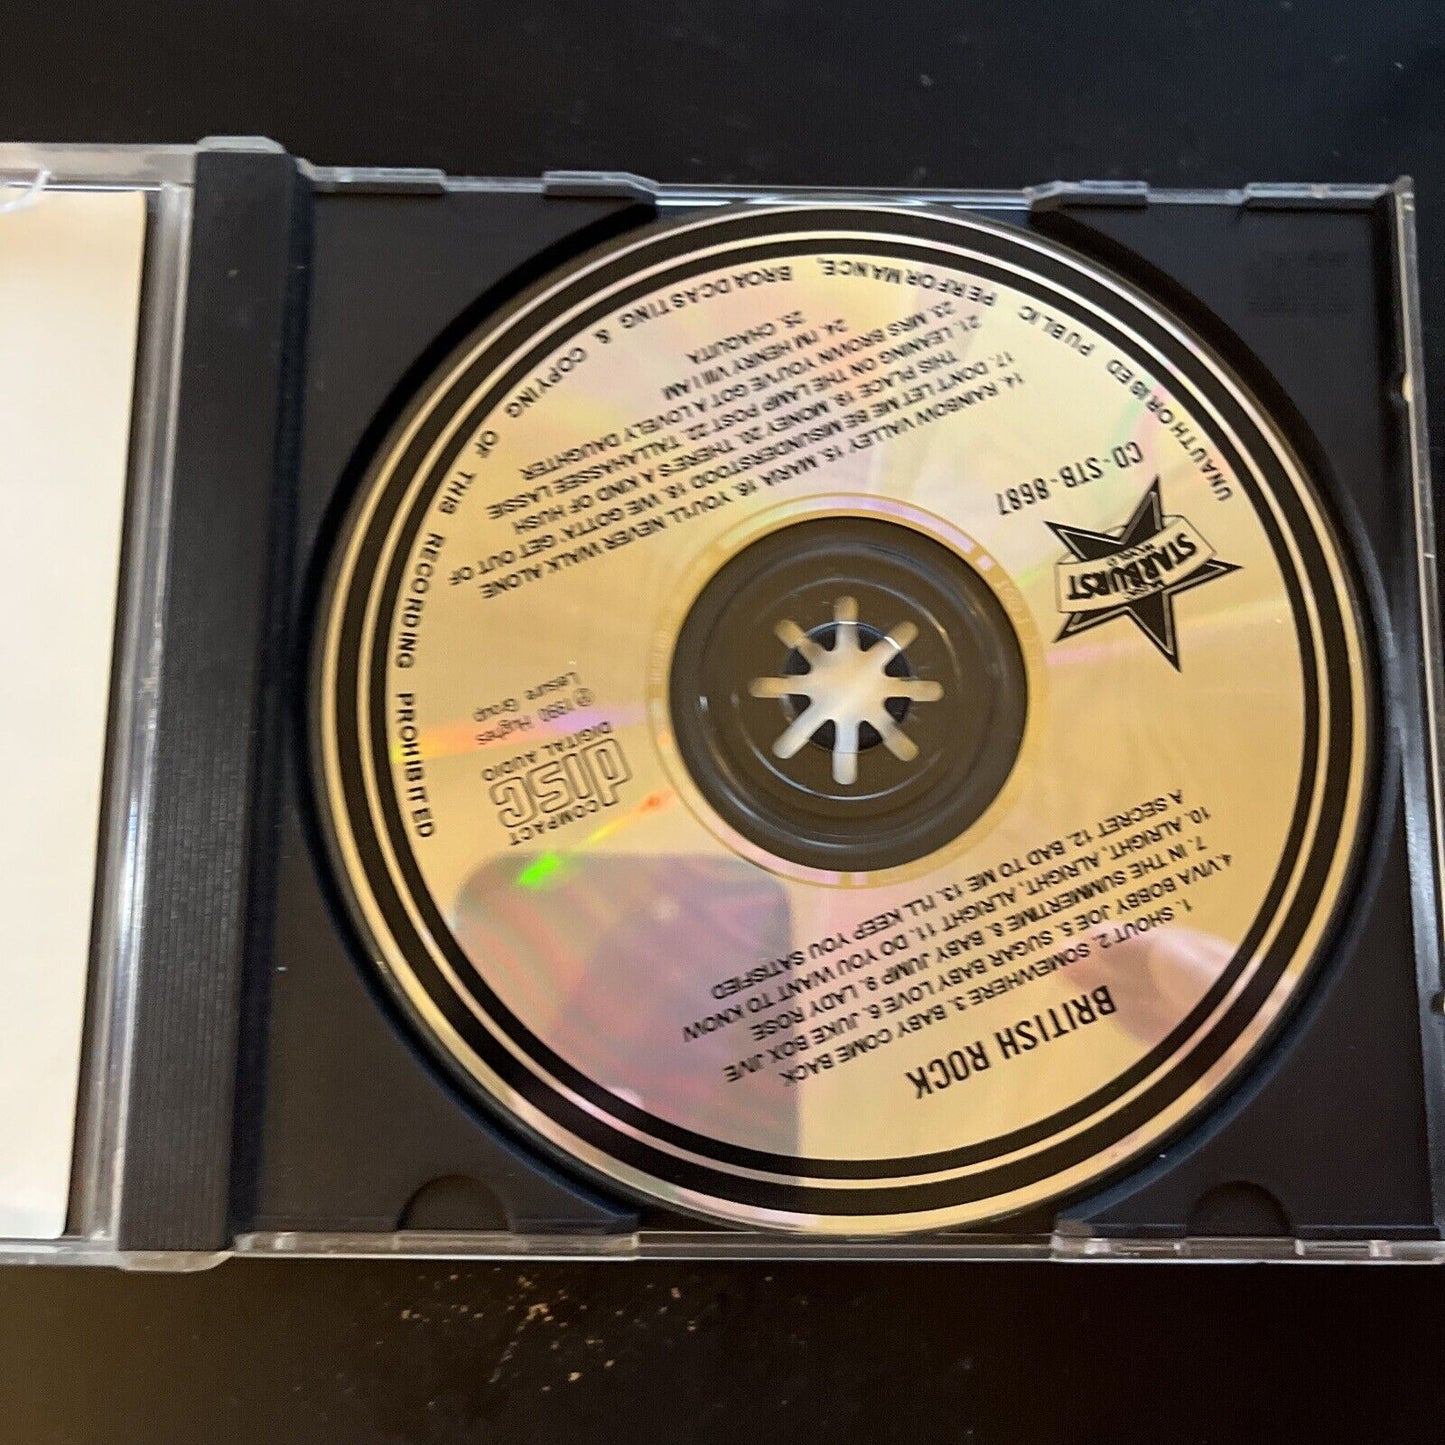 BRITISH ROCK - 25 Golden Greats / Original Artists (CD, 1990) – Retro Unit